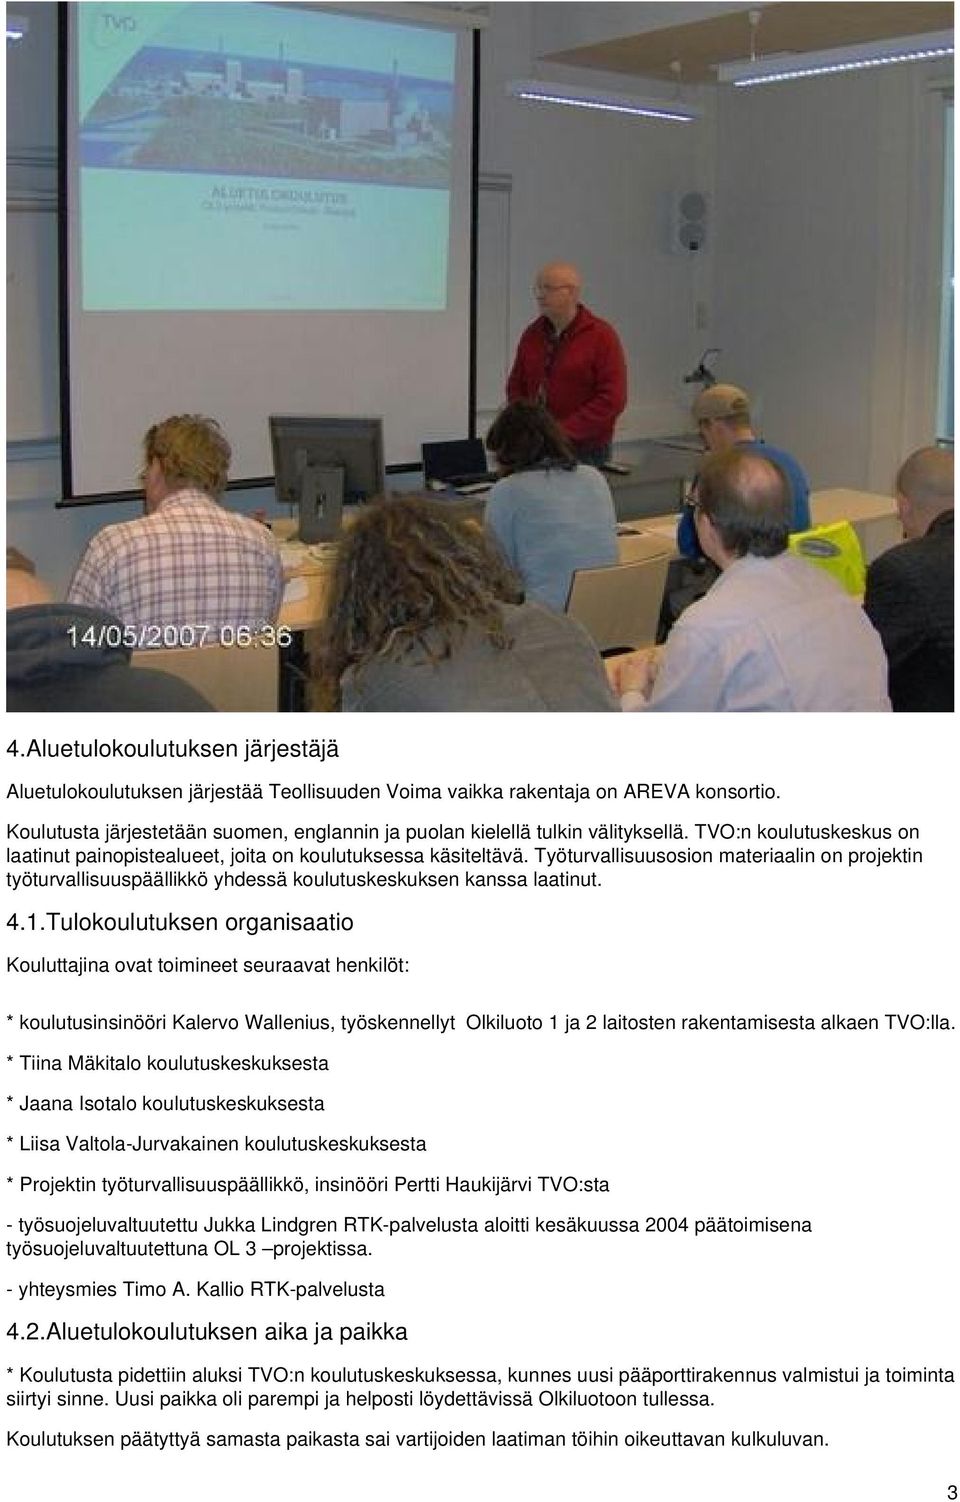 4.1.Tulokoulutuksen organisaatio Kouluttajina ovat toimineet seuraavat henkilöt: * koulutusinsinööri Kalervo Wallenius, työskennellyt Olkiluoto 1 ja 2 laitosten rakentamisesta alkaen TVO:lla.